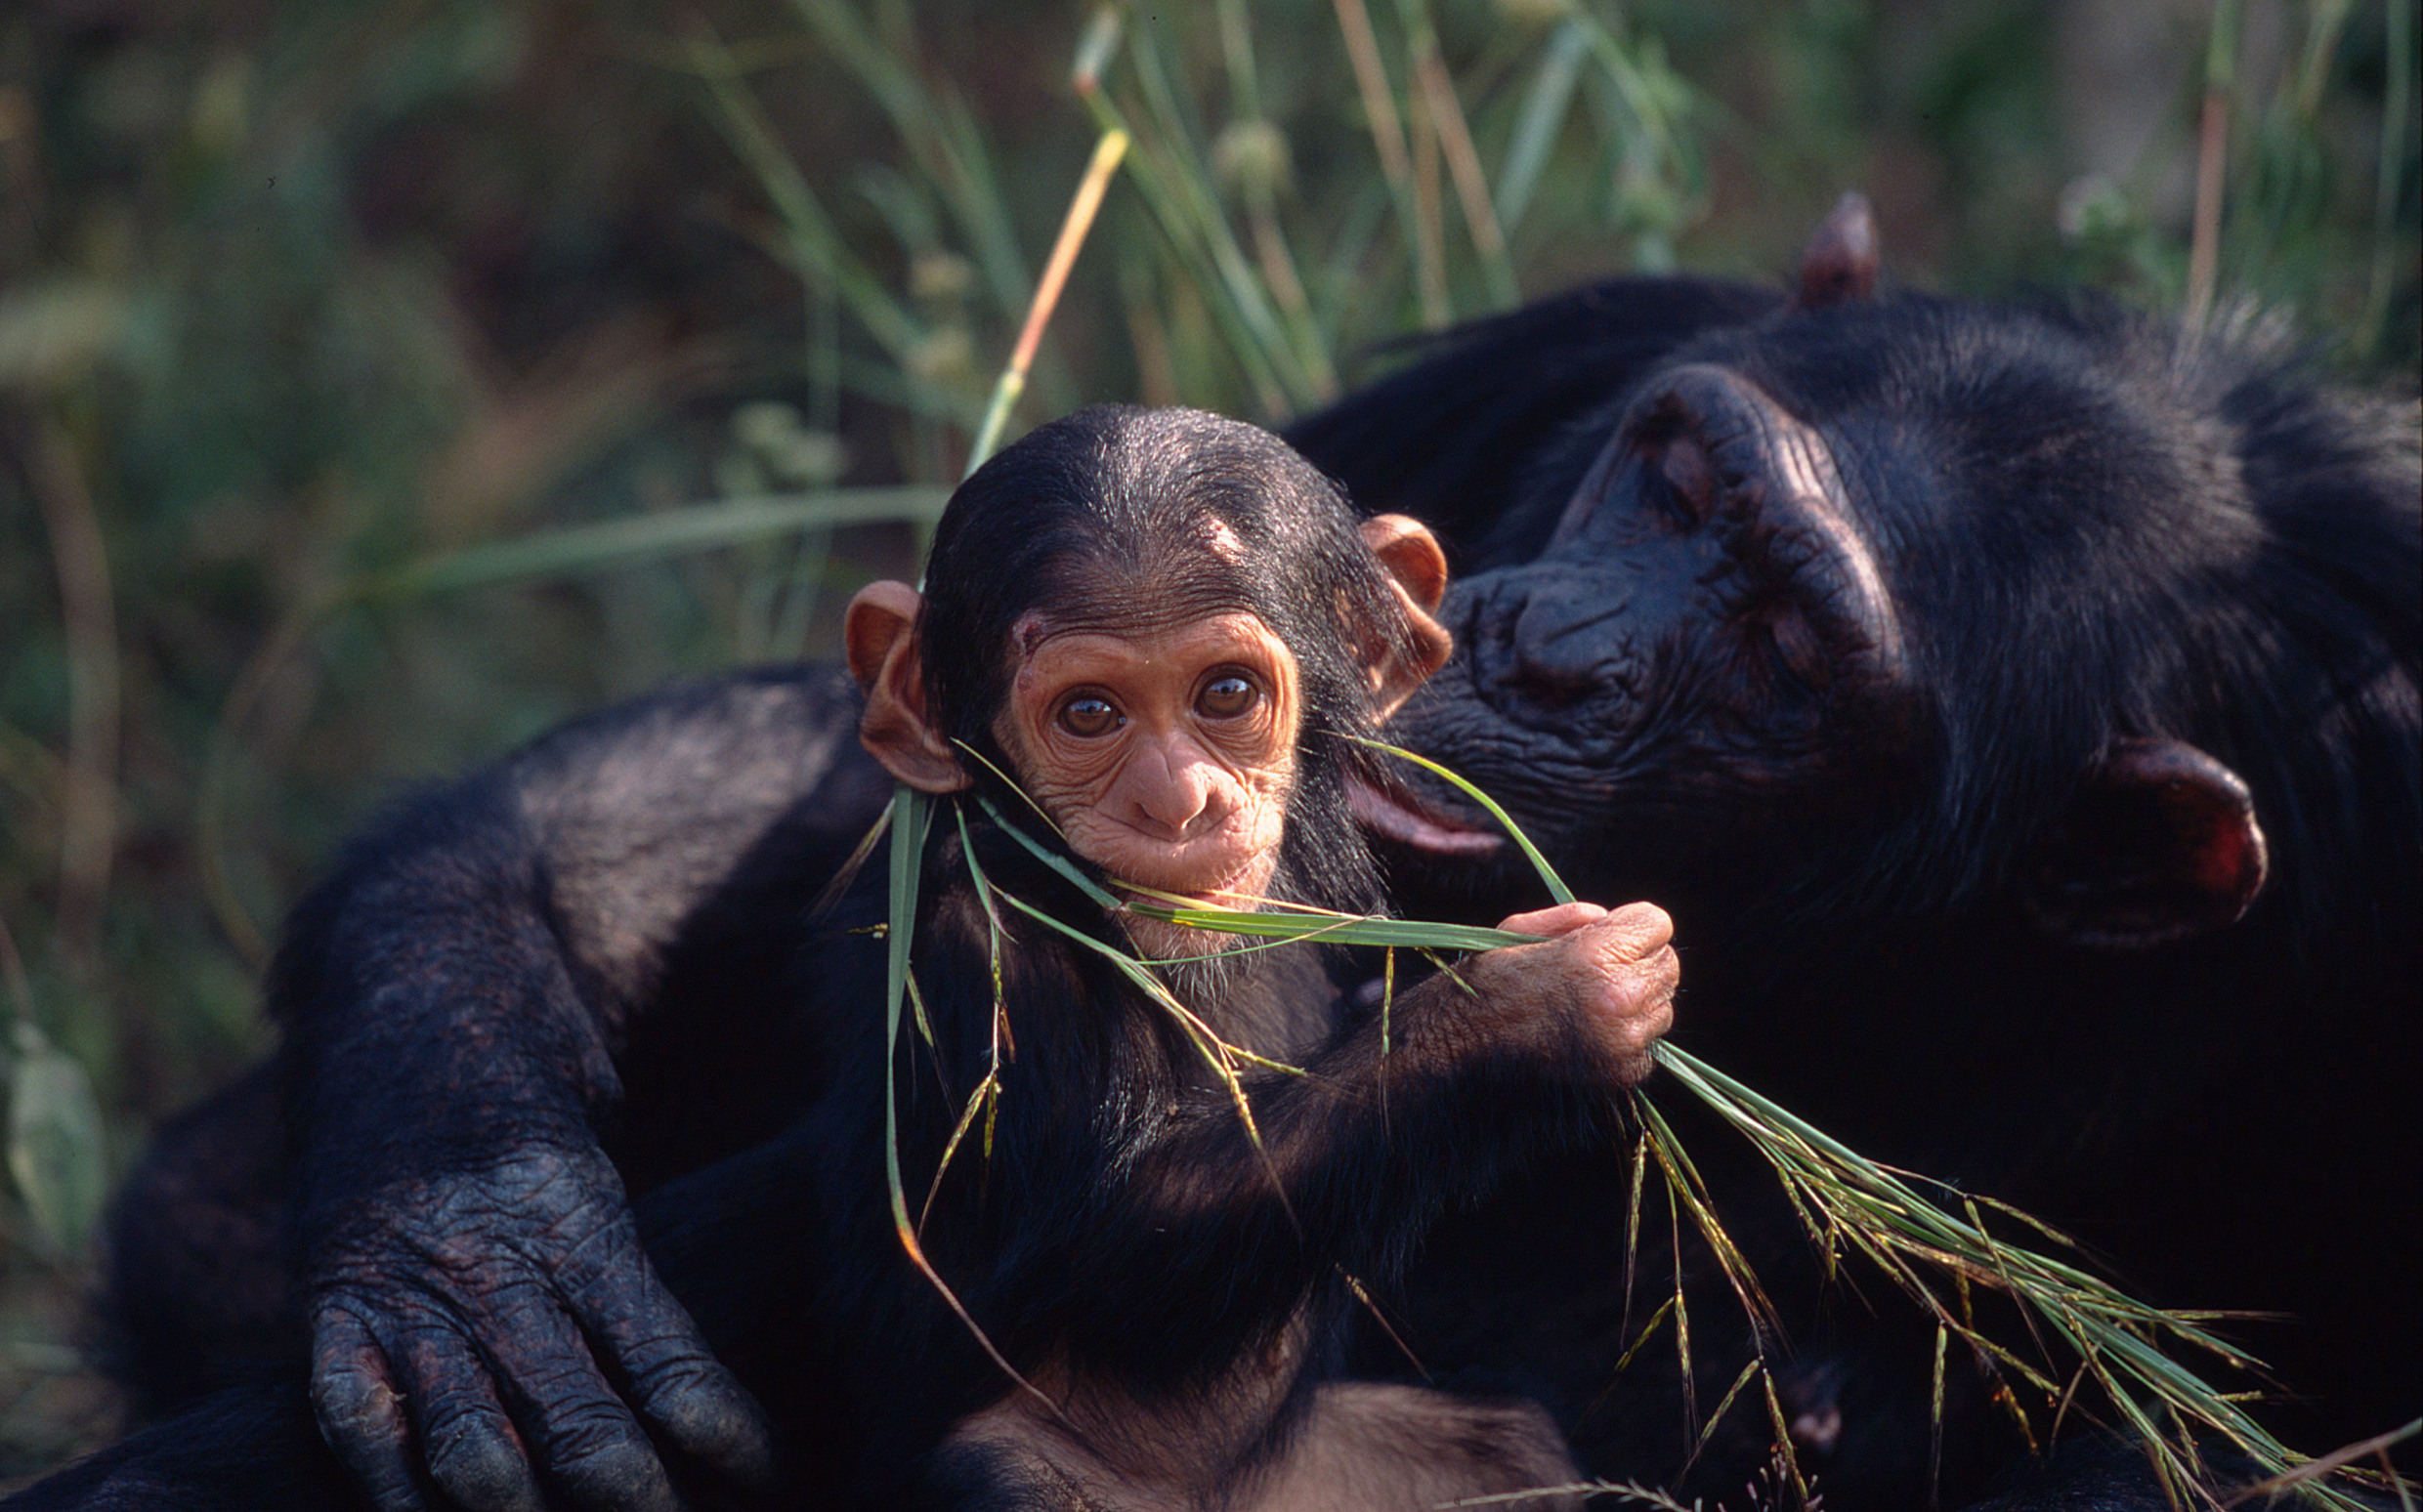 La población del chimpancé central es de 130.000 ejemplares, según un nuevo estudio publicado en 2018. Imagen: © Martin Harvey / WWF